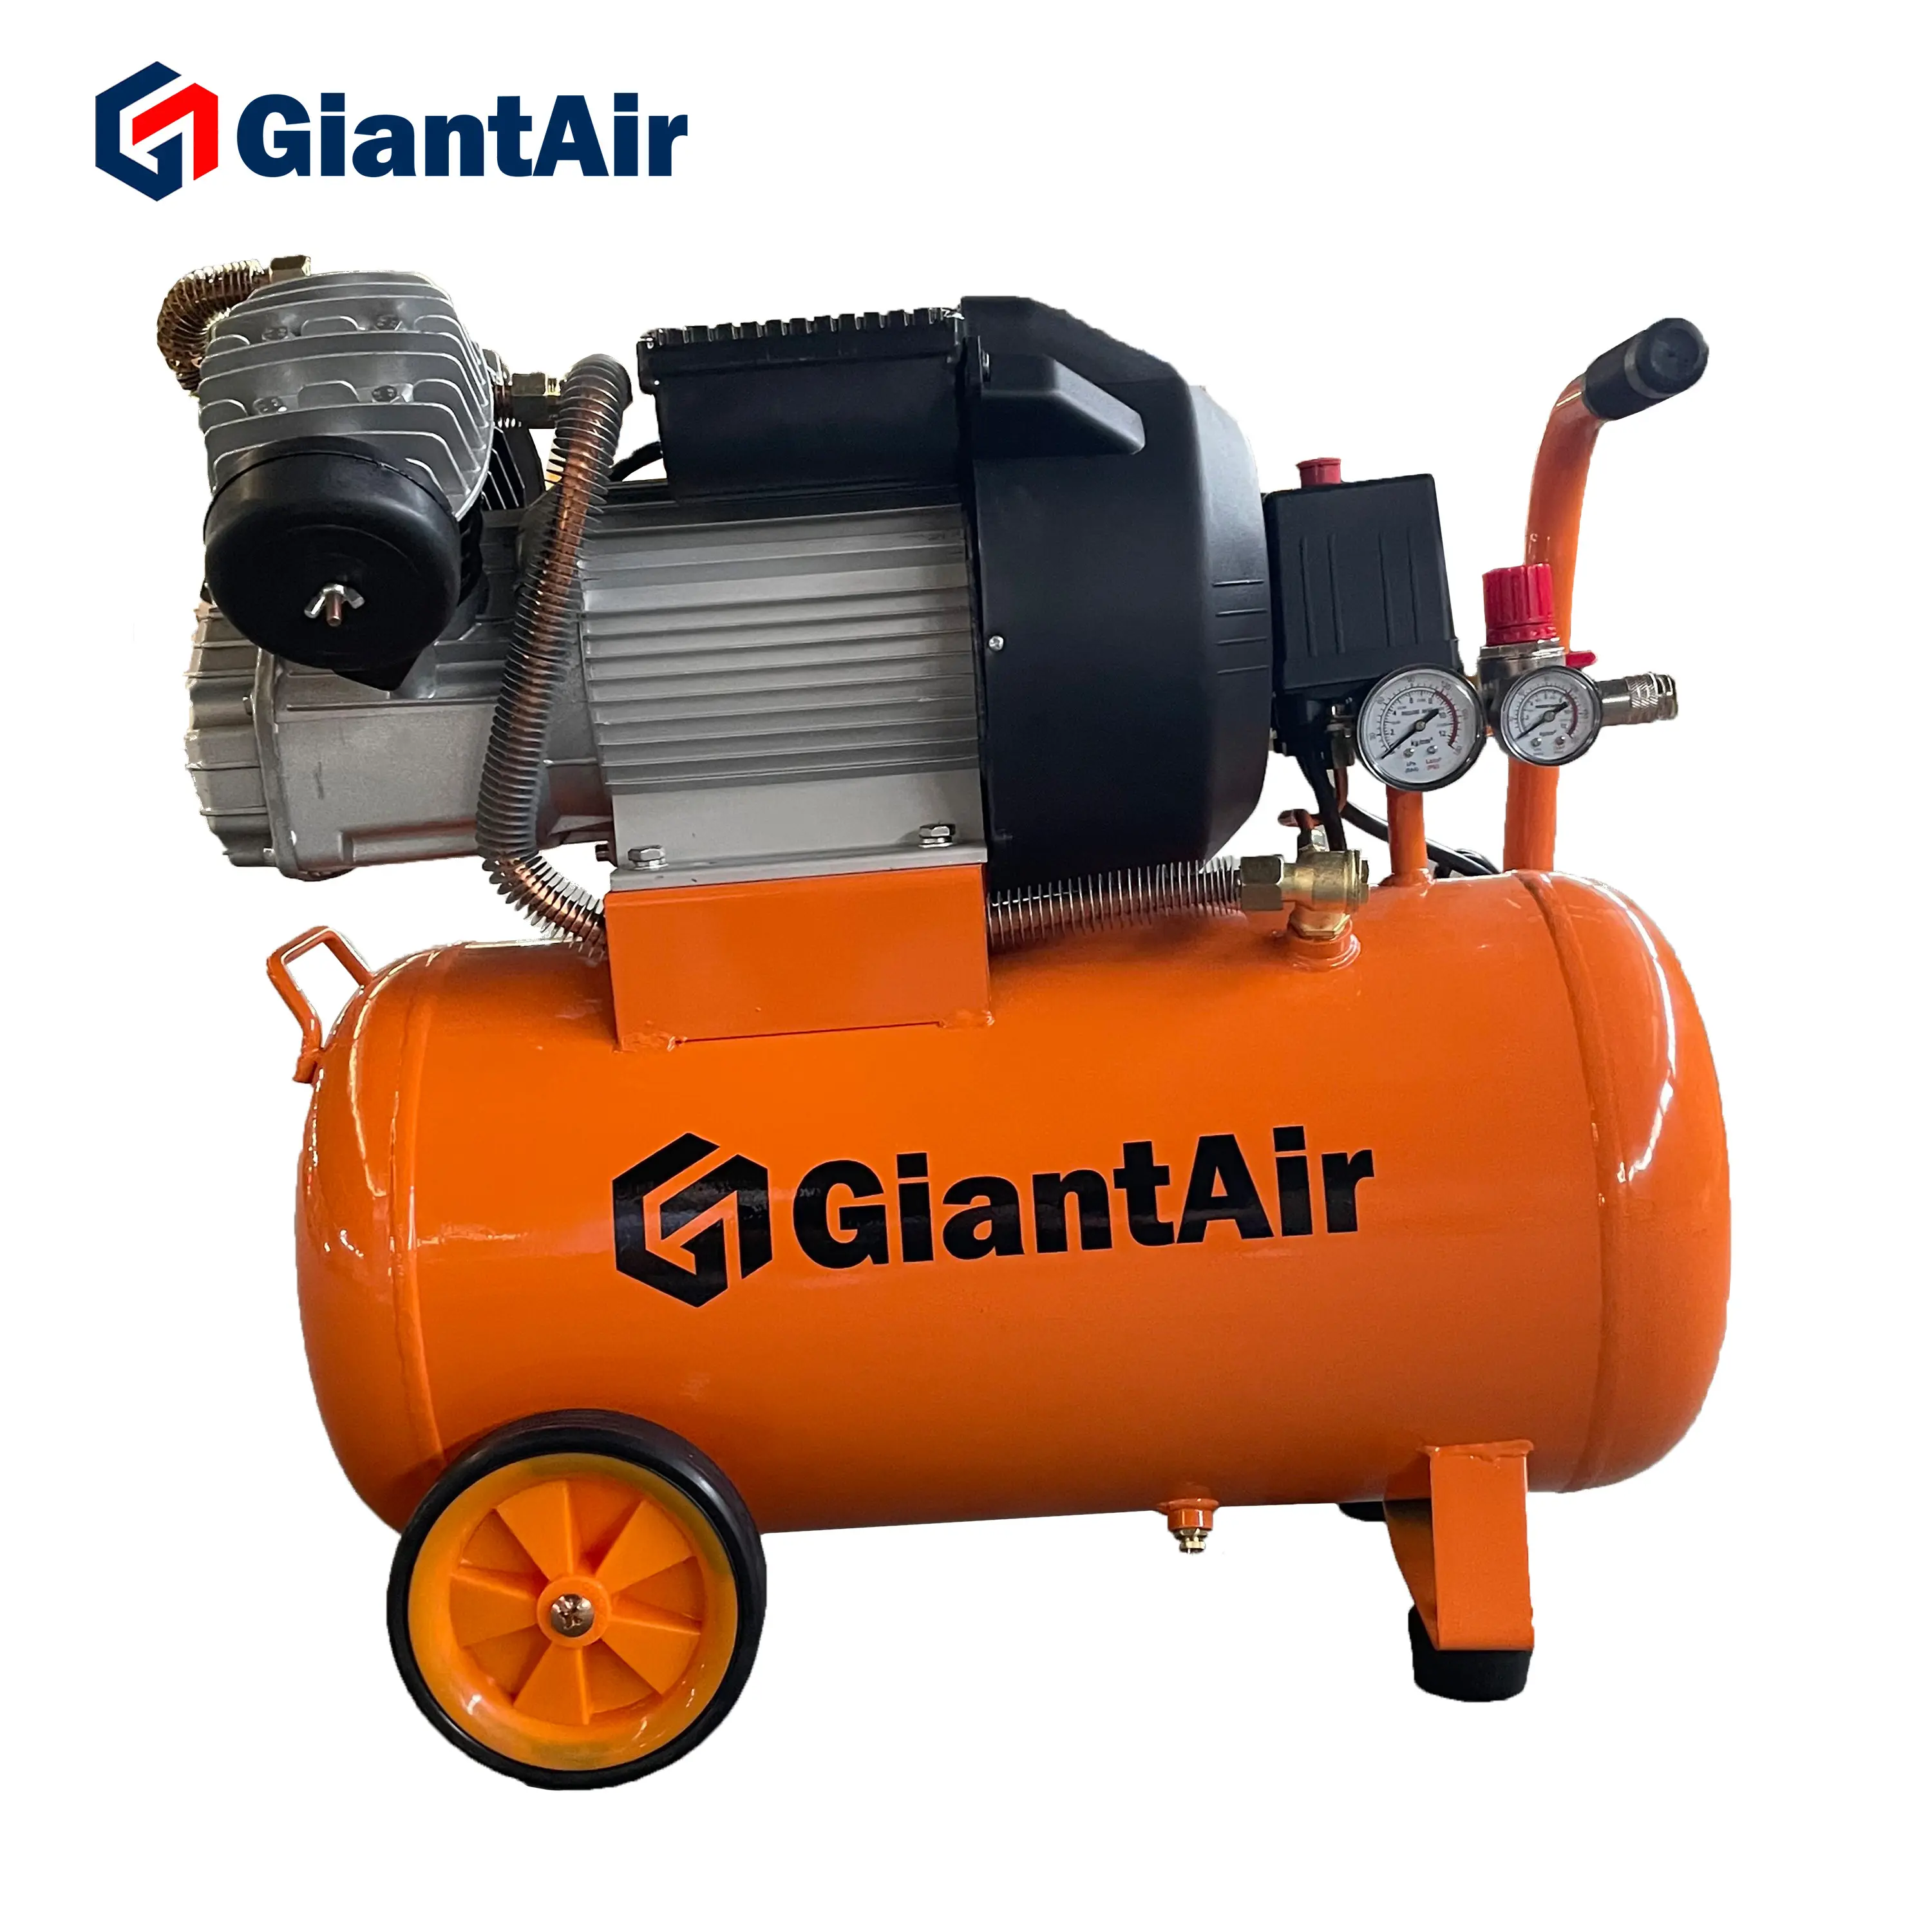 Compressor de ar silencioso para carro, pequeno, giantair 110v 60hz, tanque de 30 litros, 3hp, compressor de pistão portátil